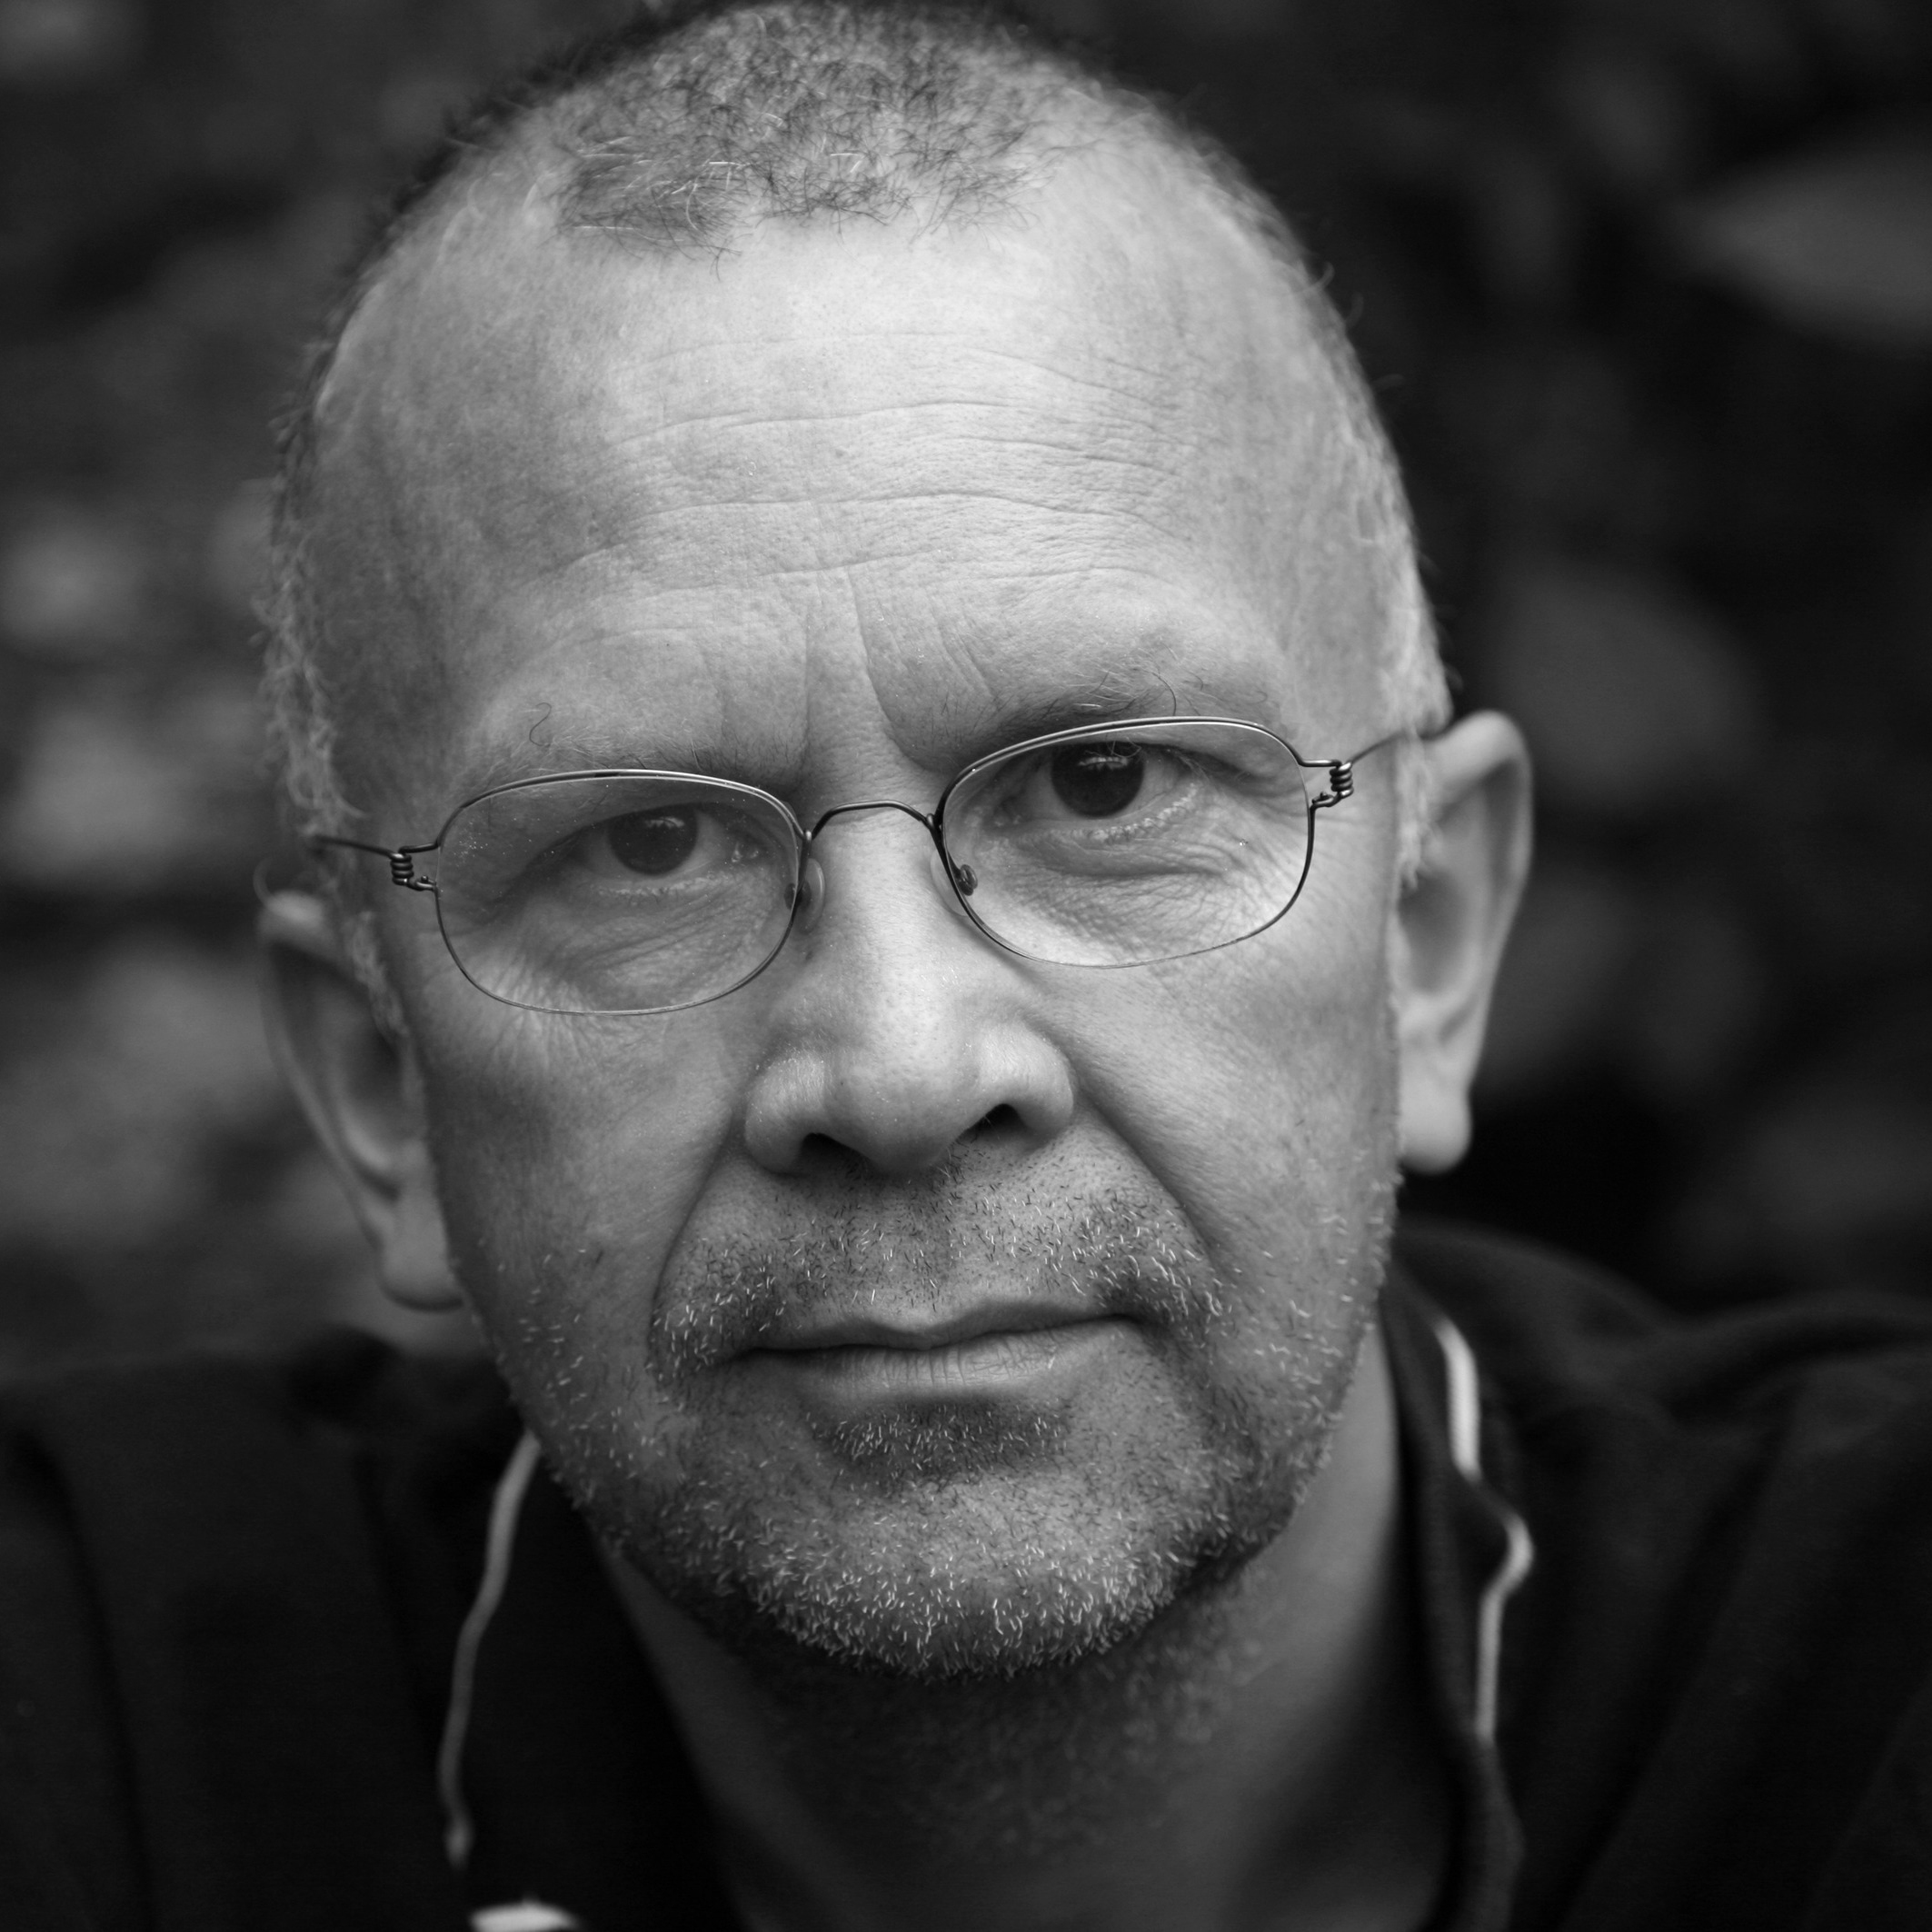 Profilbilde Rune Belsvik av fotograf Sol Nodeland